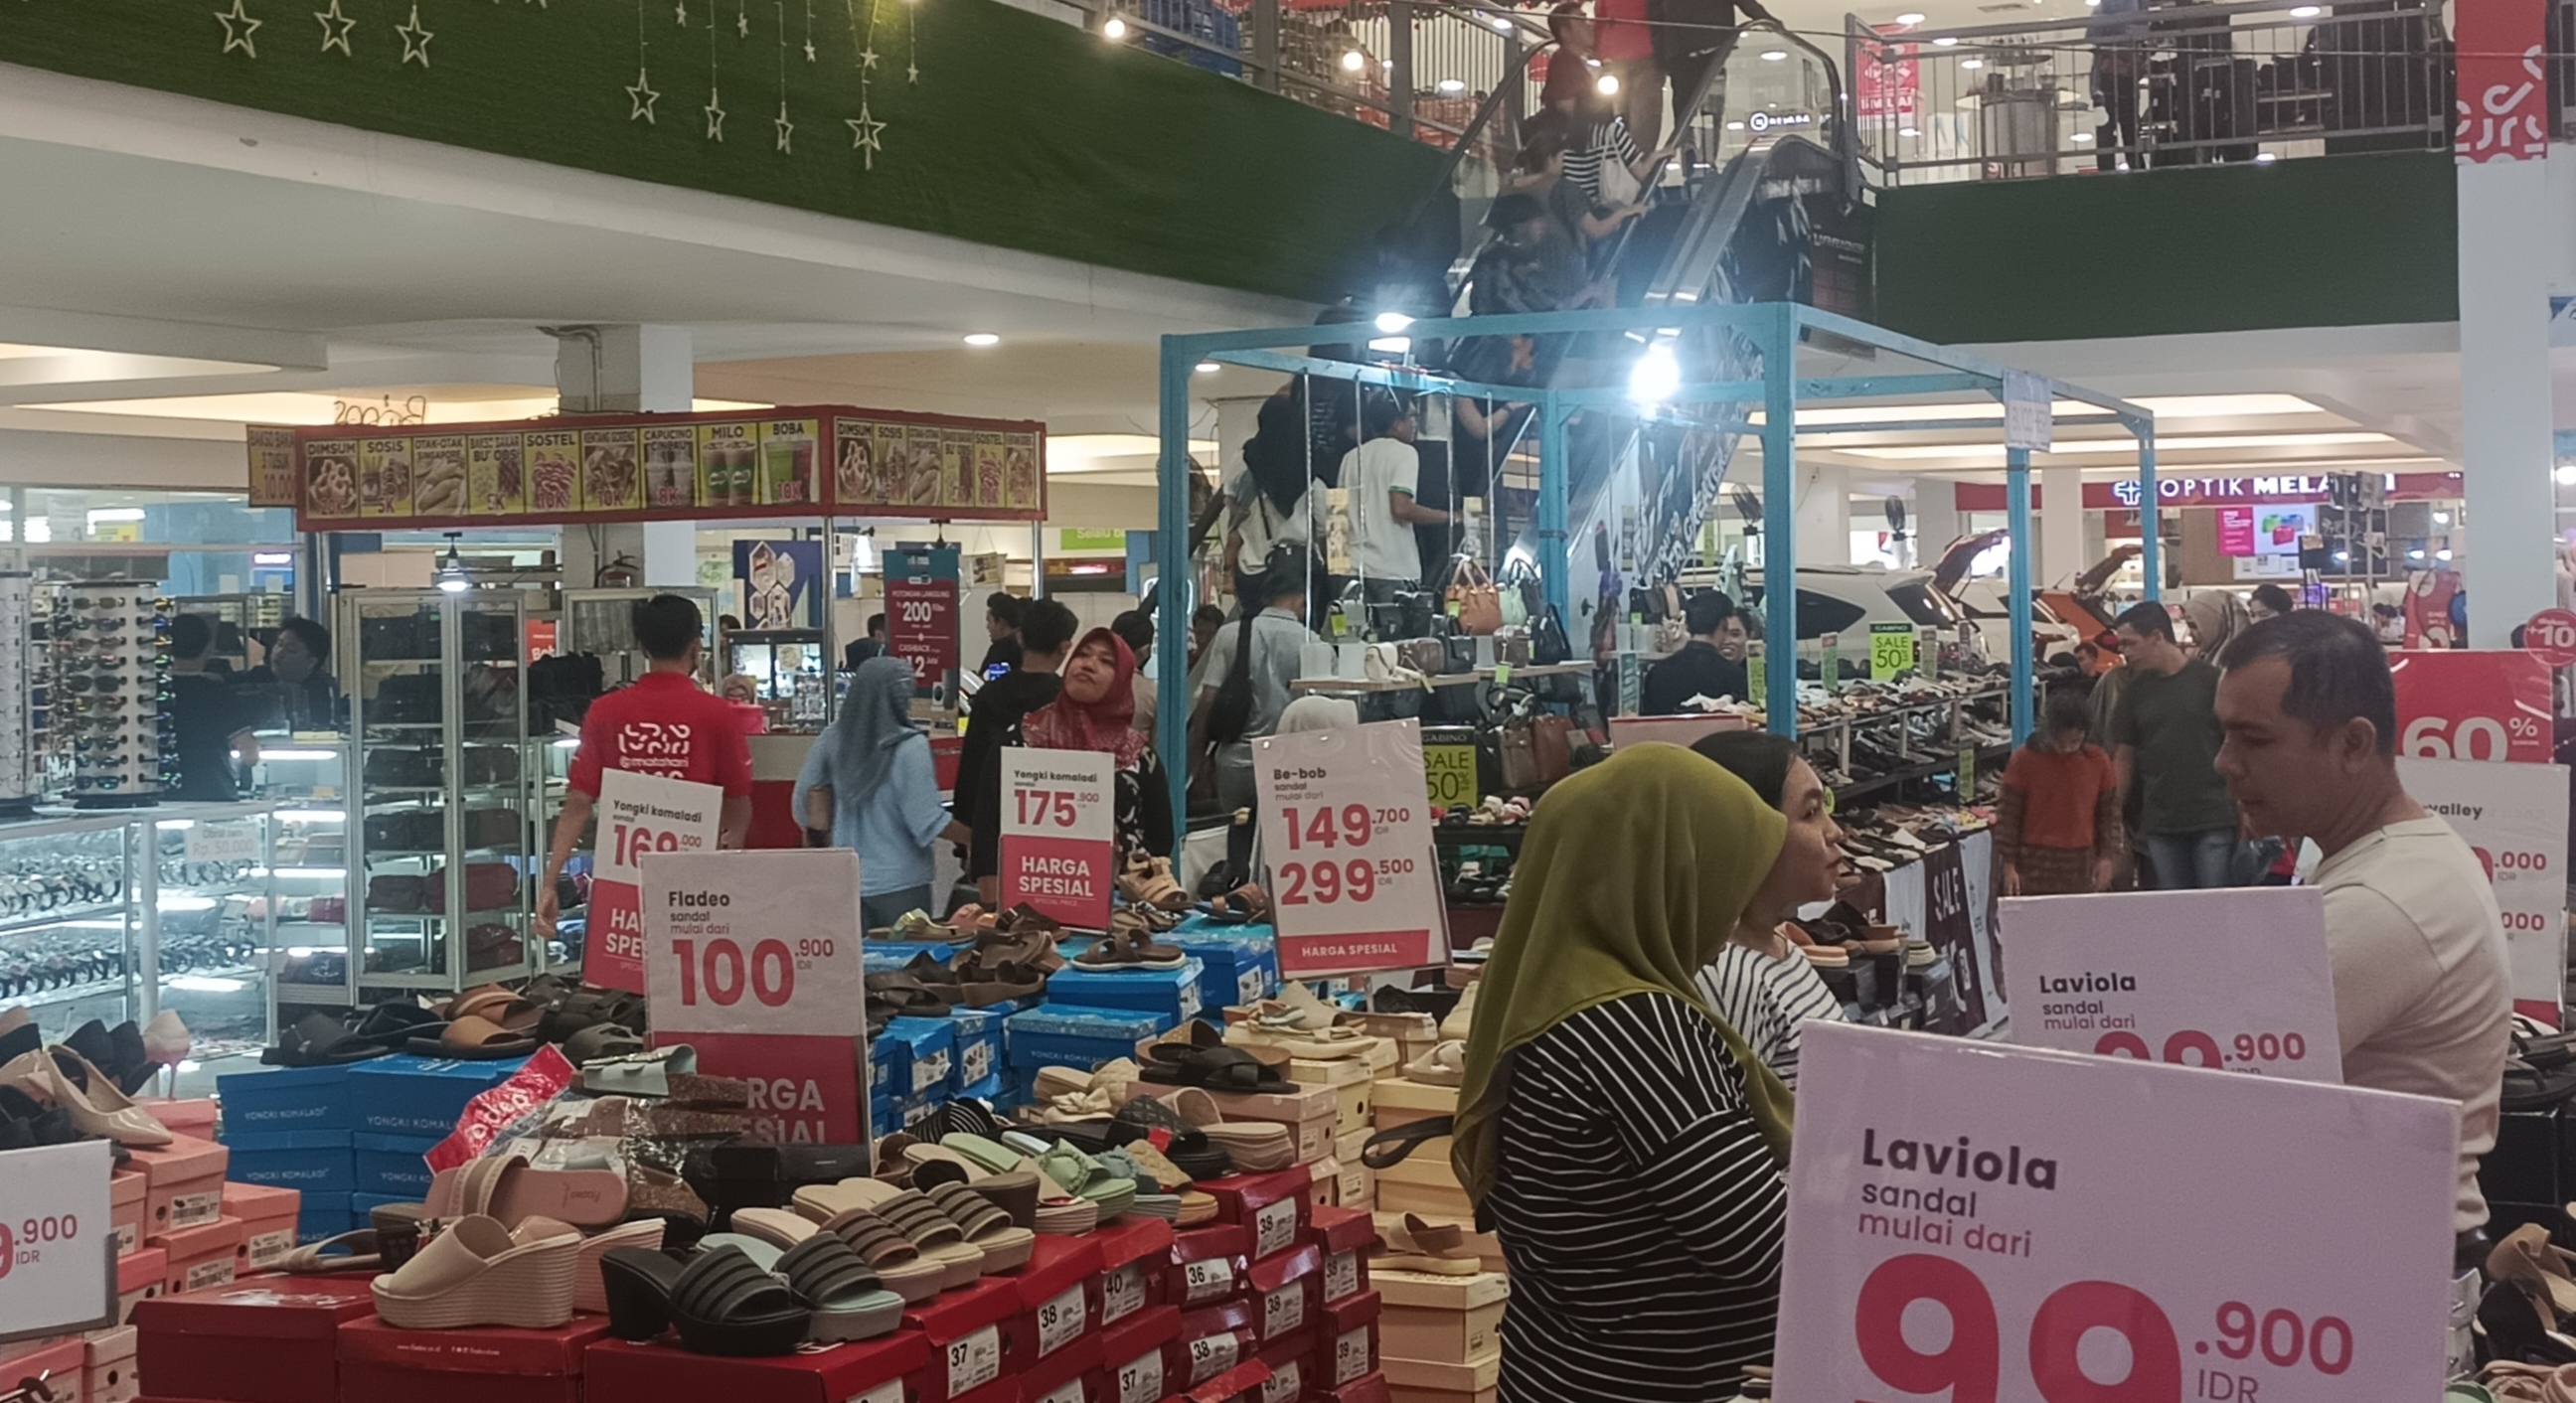 Bengkulu Indah Mall BIM Pusat Berbelanja di Kota Bengkulu Lengkap Jenis Kebutuhan Harga Terjangkau Diskon 30℅